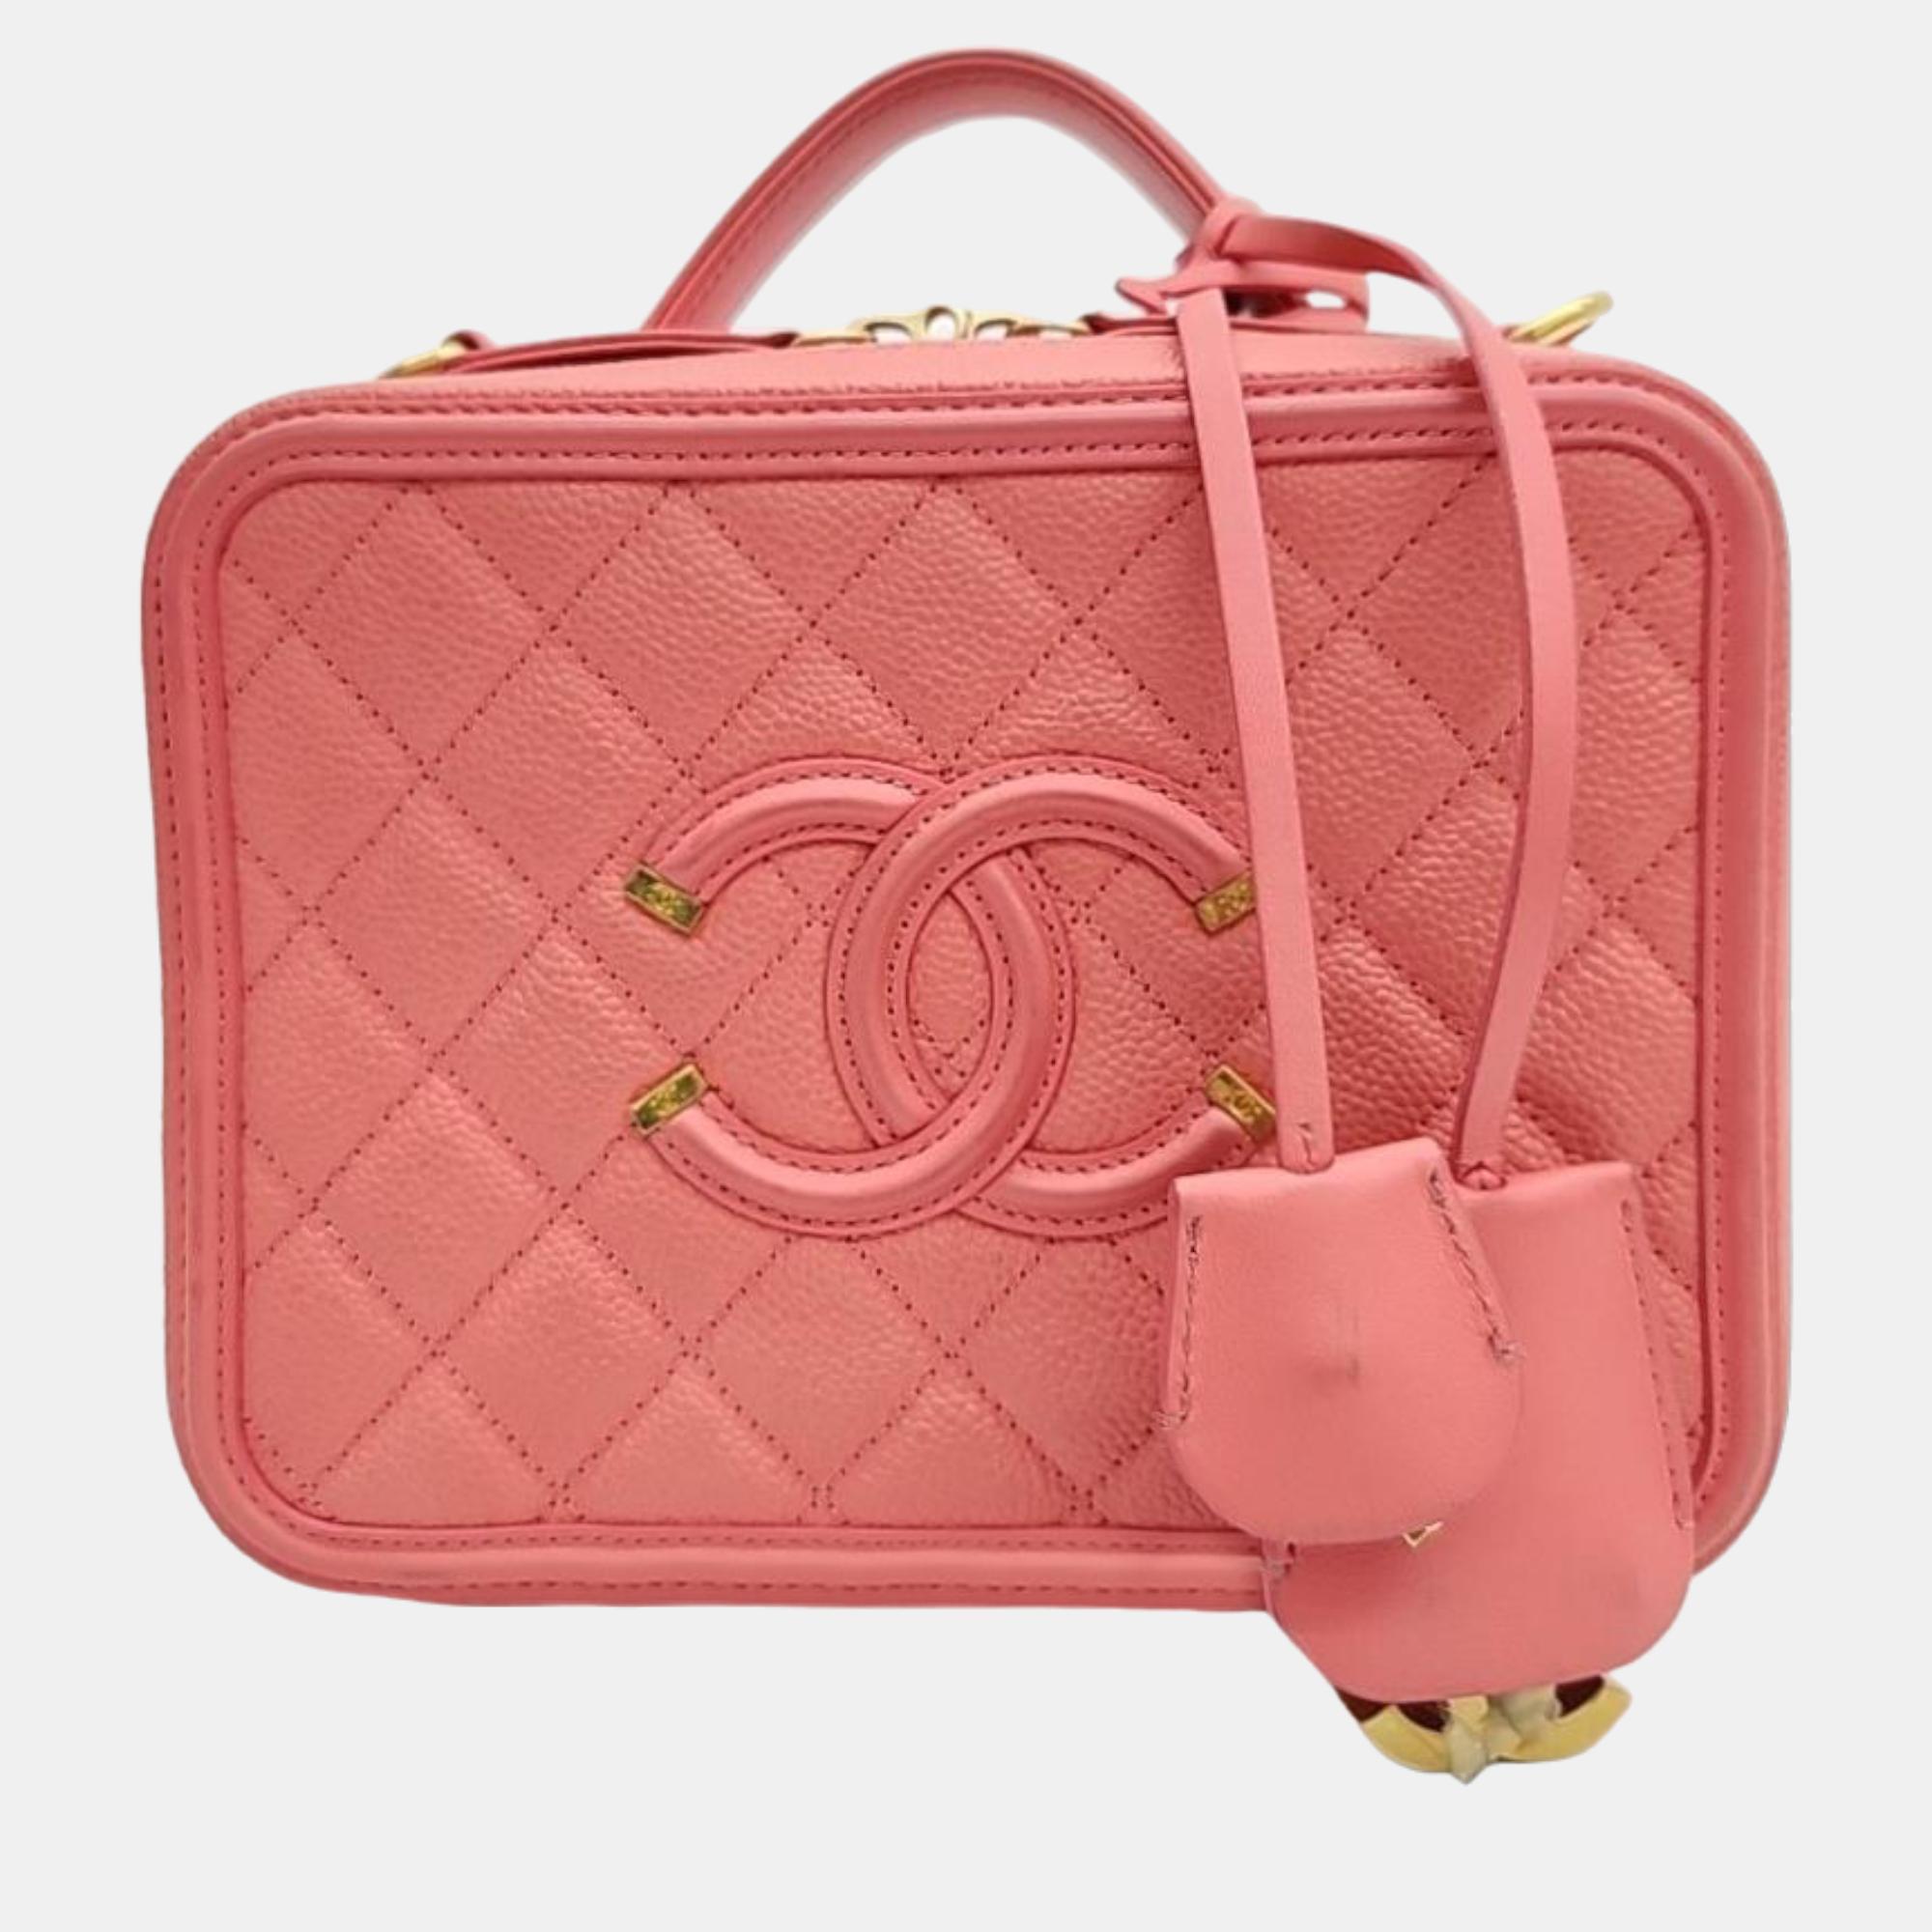 Chanel pink leather medium filigree vanity shoulder bag